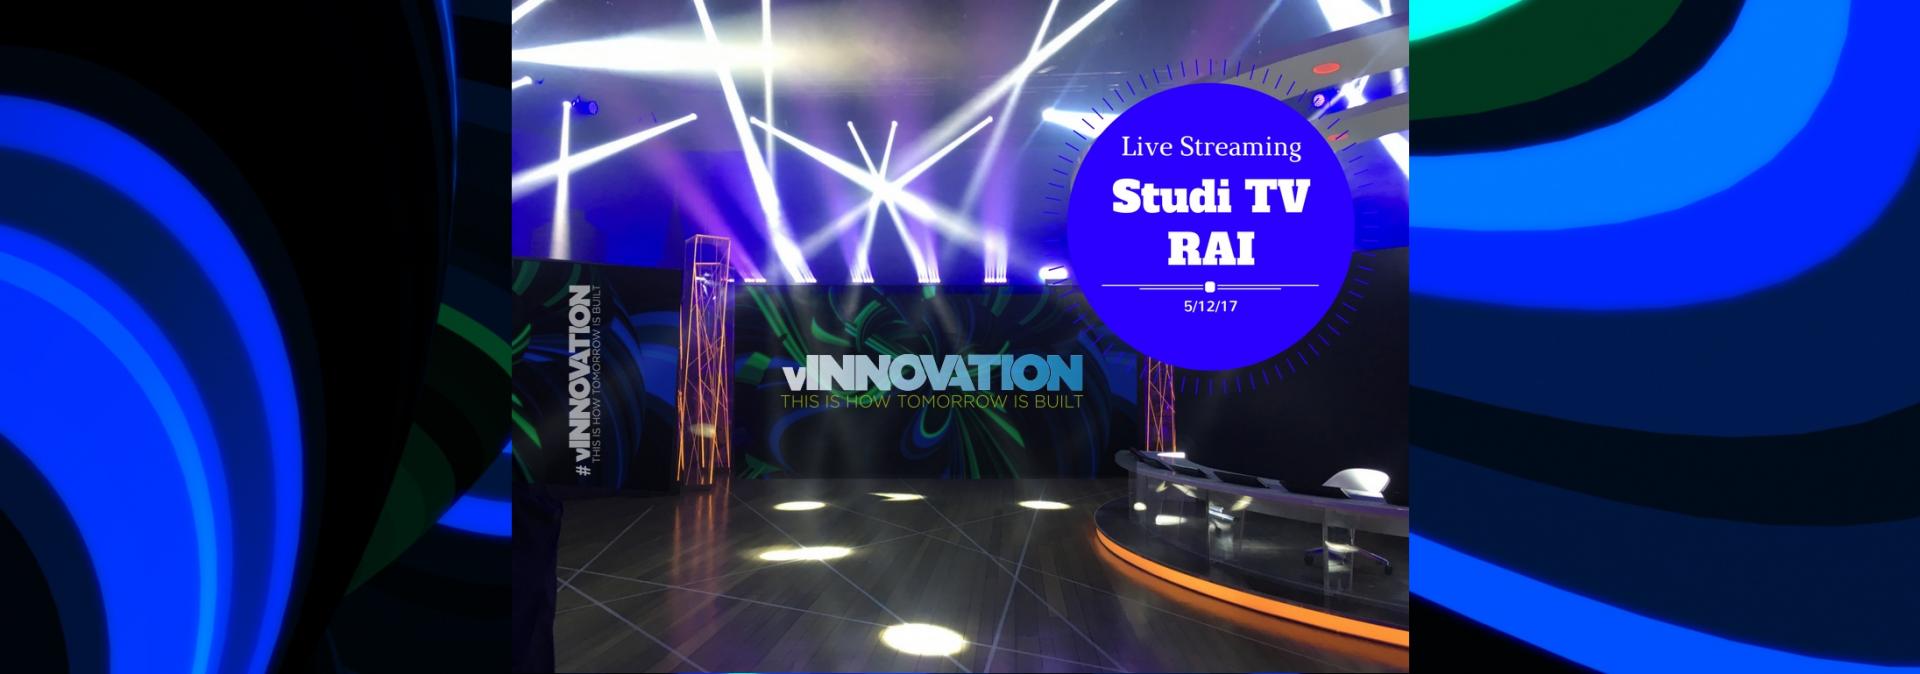 Segui in Live Streaming l’evento VMware vInnovation dagli Studi TV﻿ RAI